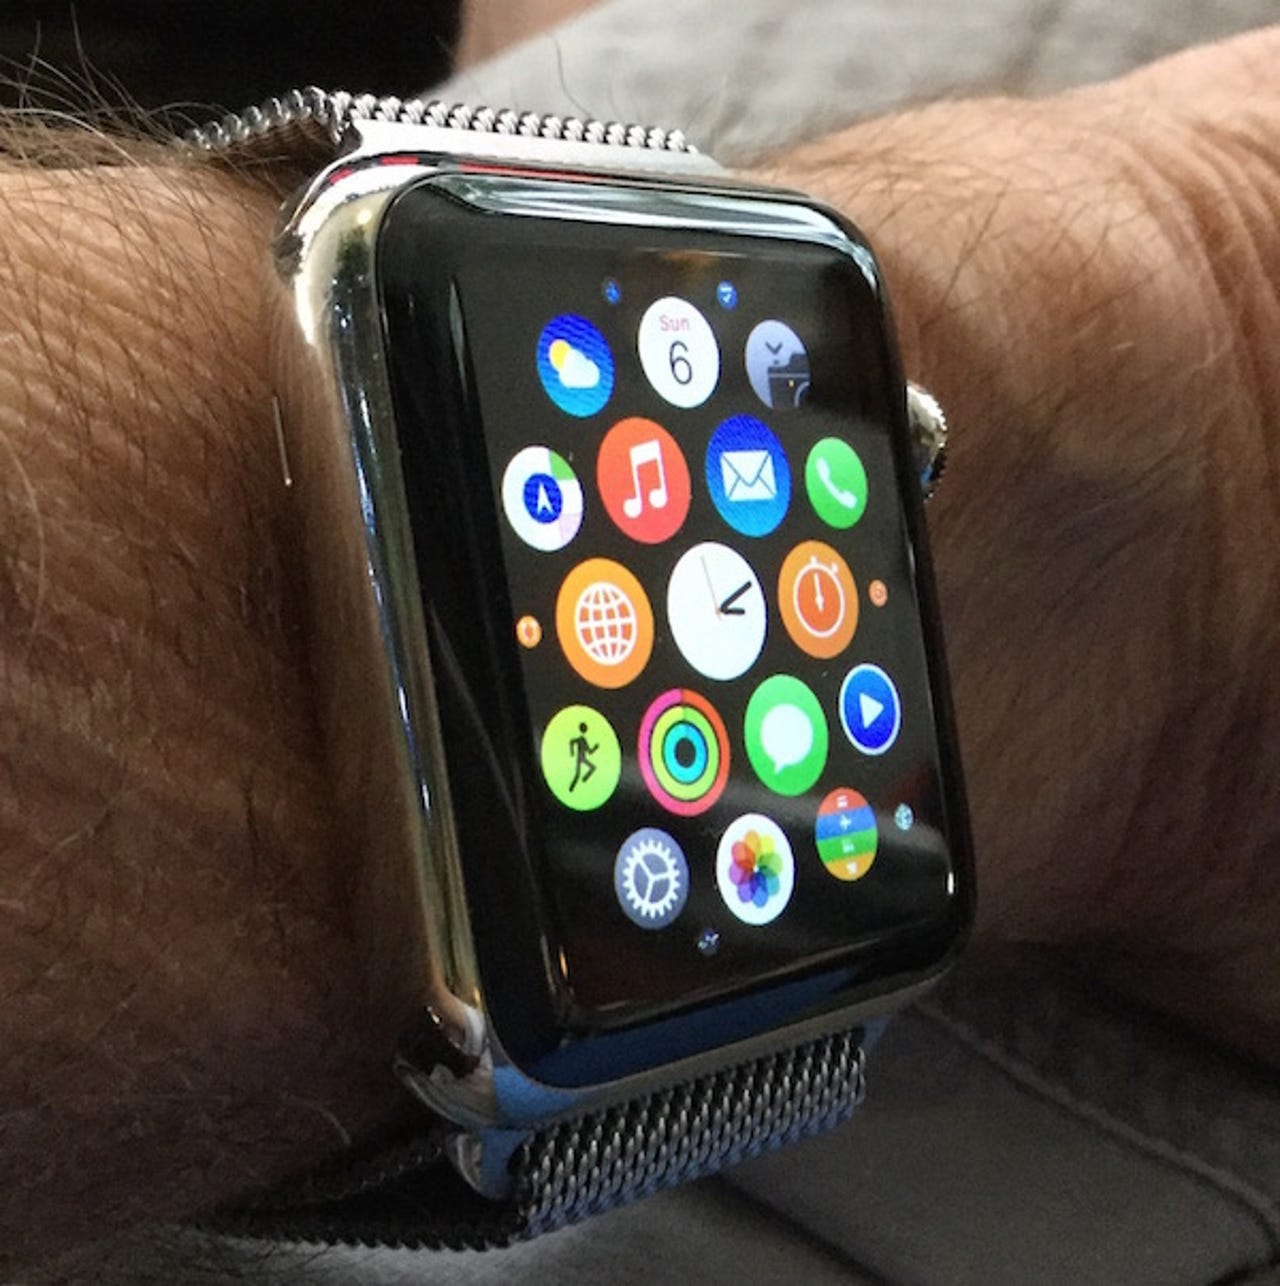 jk-apple-watch.jpg